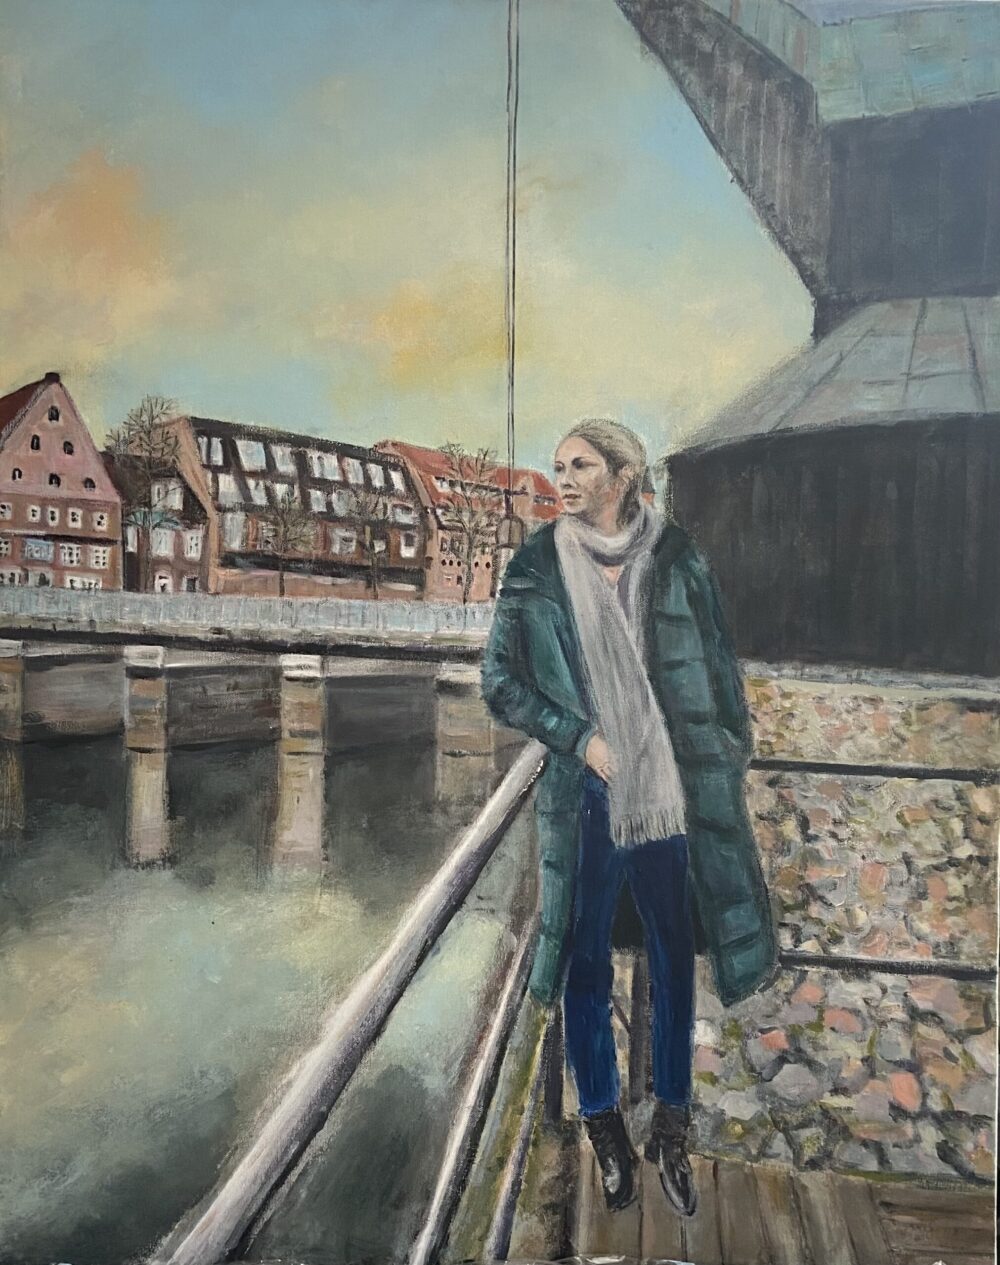 Rote-Rosen-Schauspielerin Jelena Mitschke im Lüneburger Wasserviertel, Gemälde von Karin Greife, auch als Kunstdruck auf Leinwand ab 29 € erhältlich